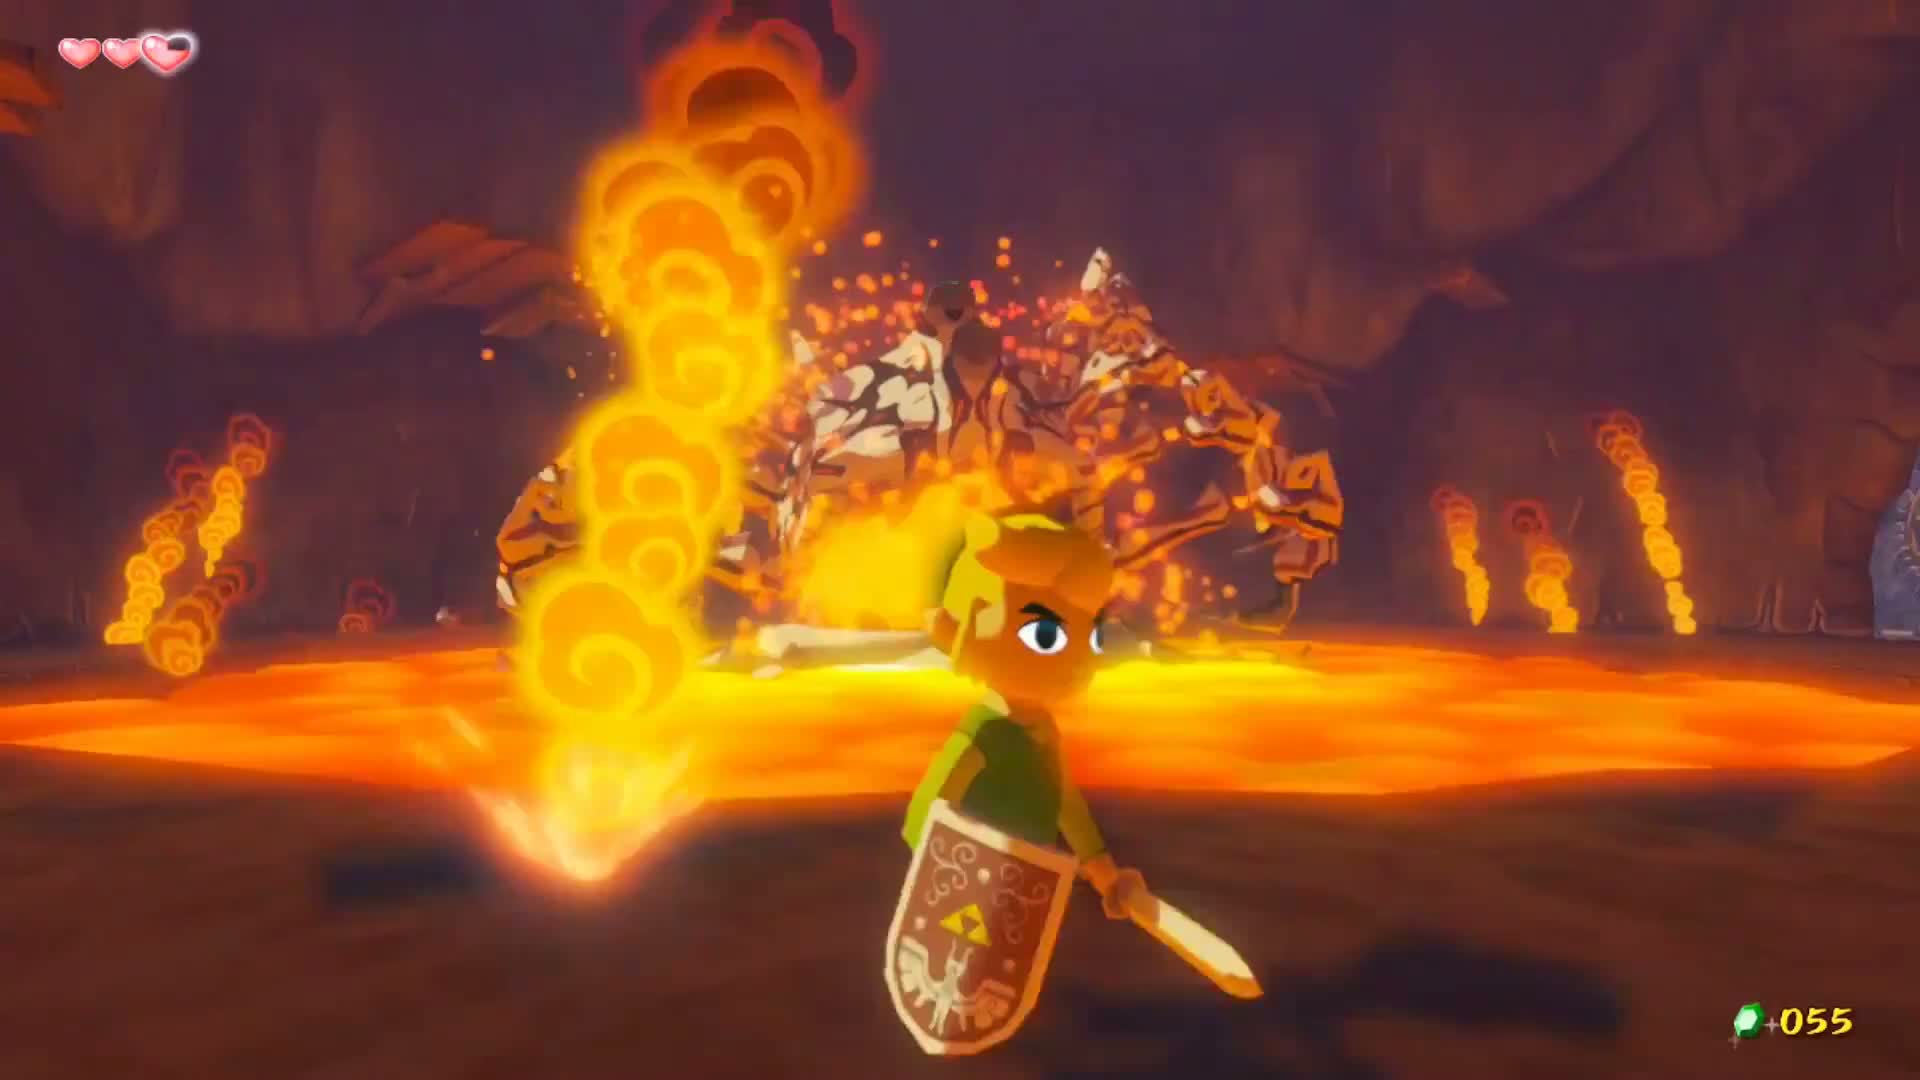 Legend of Zelda Wind Waker HD